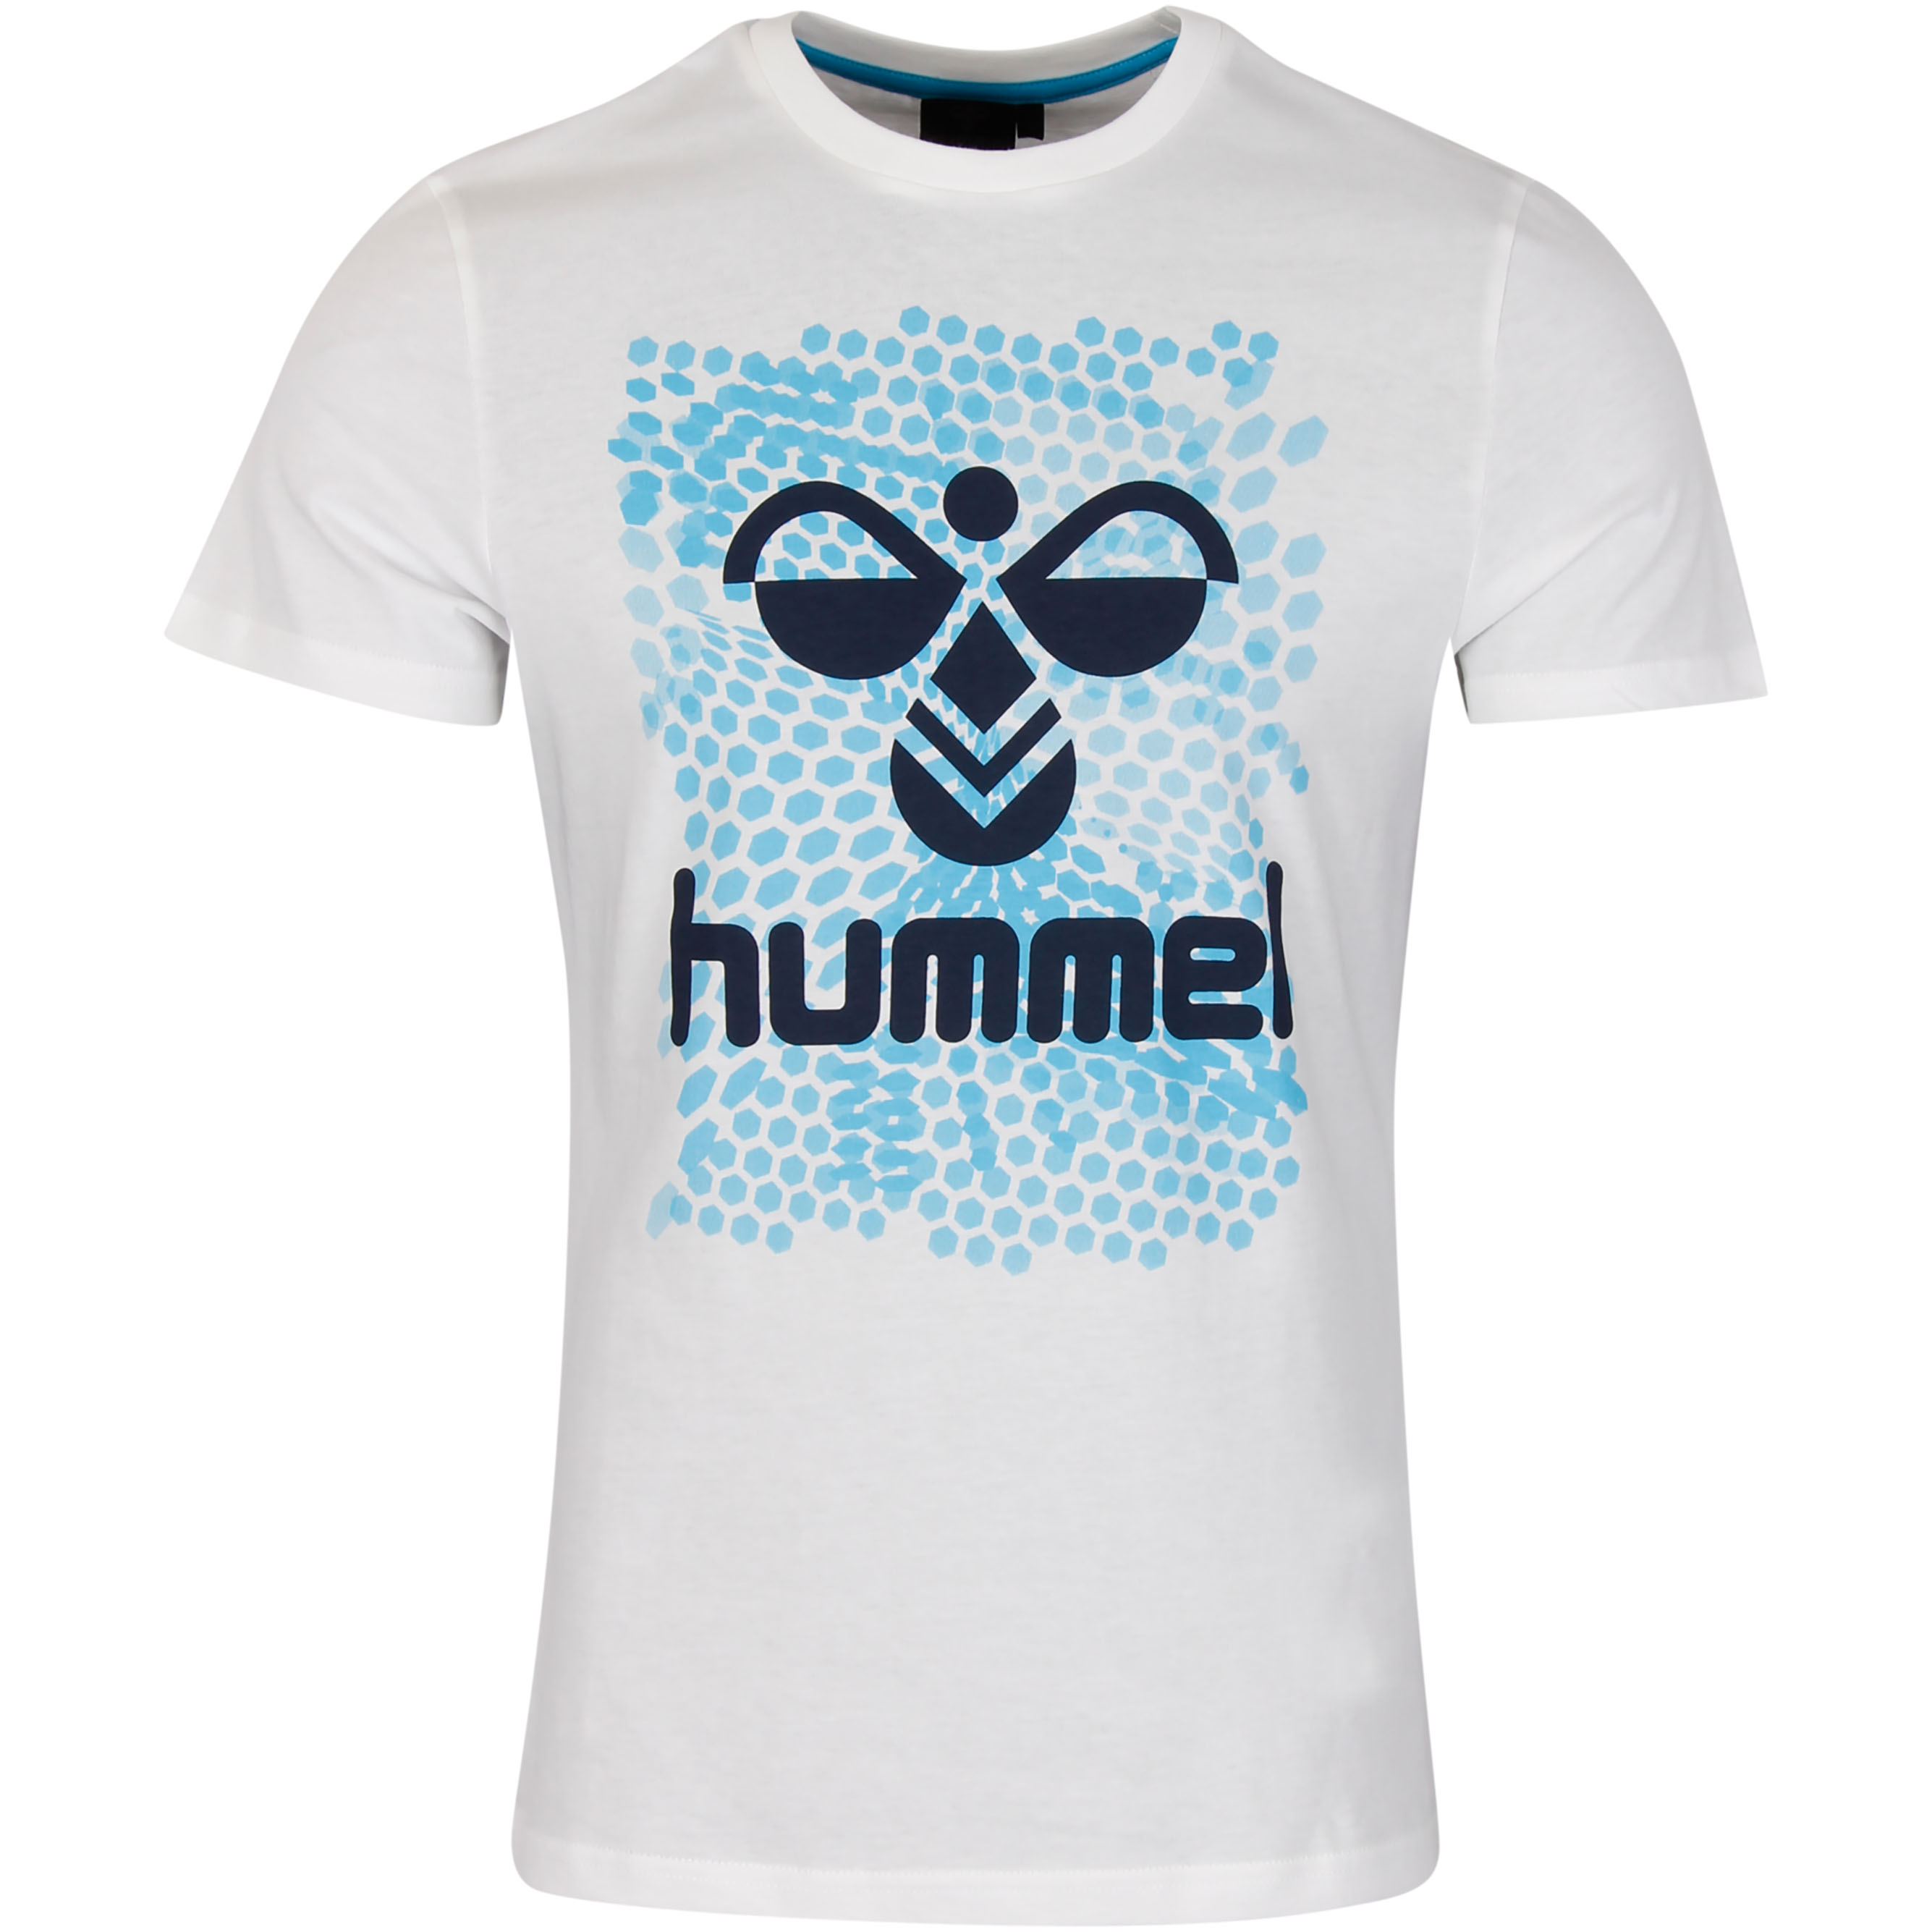 Hummel T-Shirt Hexagon - Weiß/Blau, Gr. S 